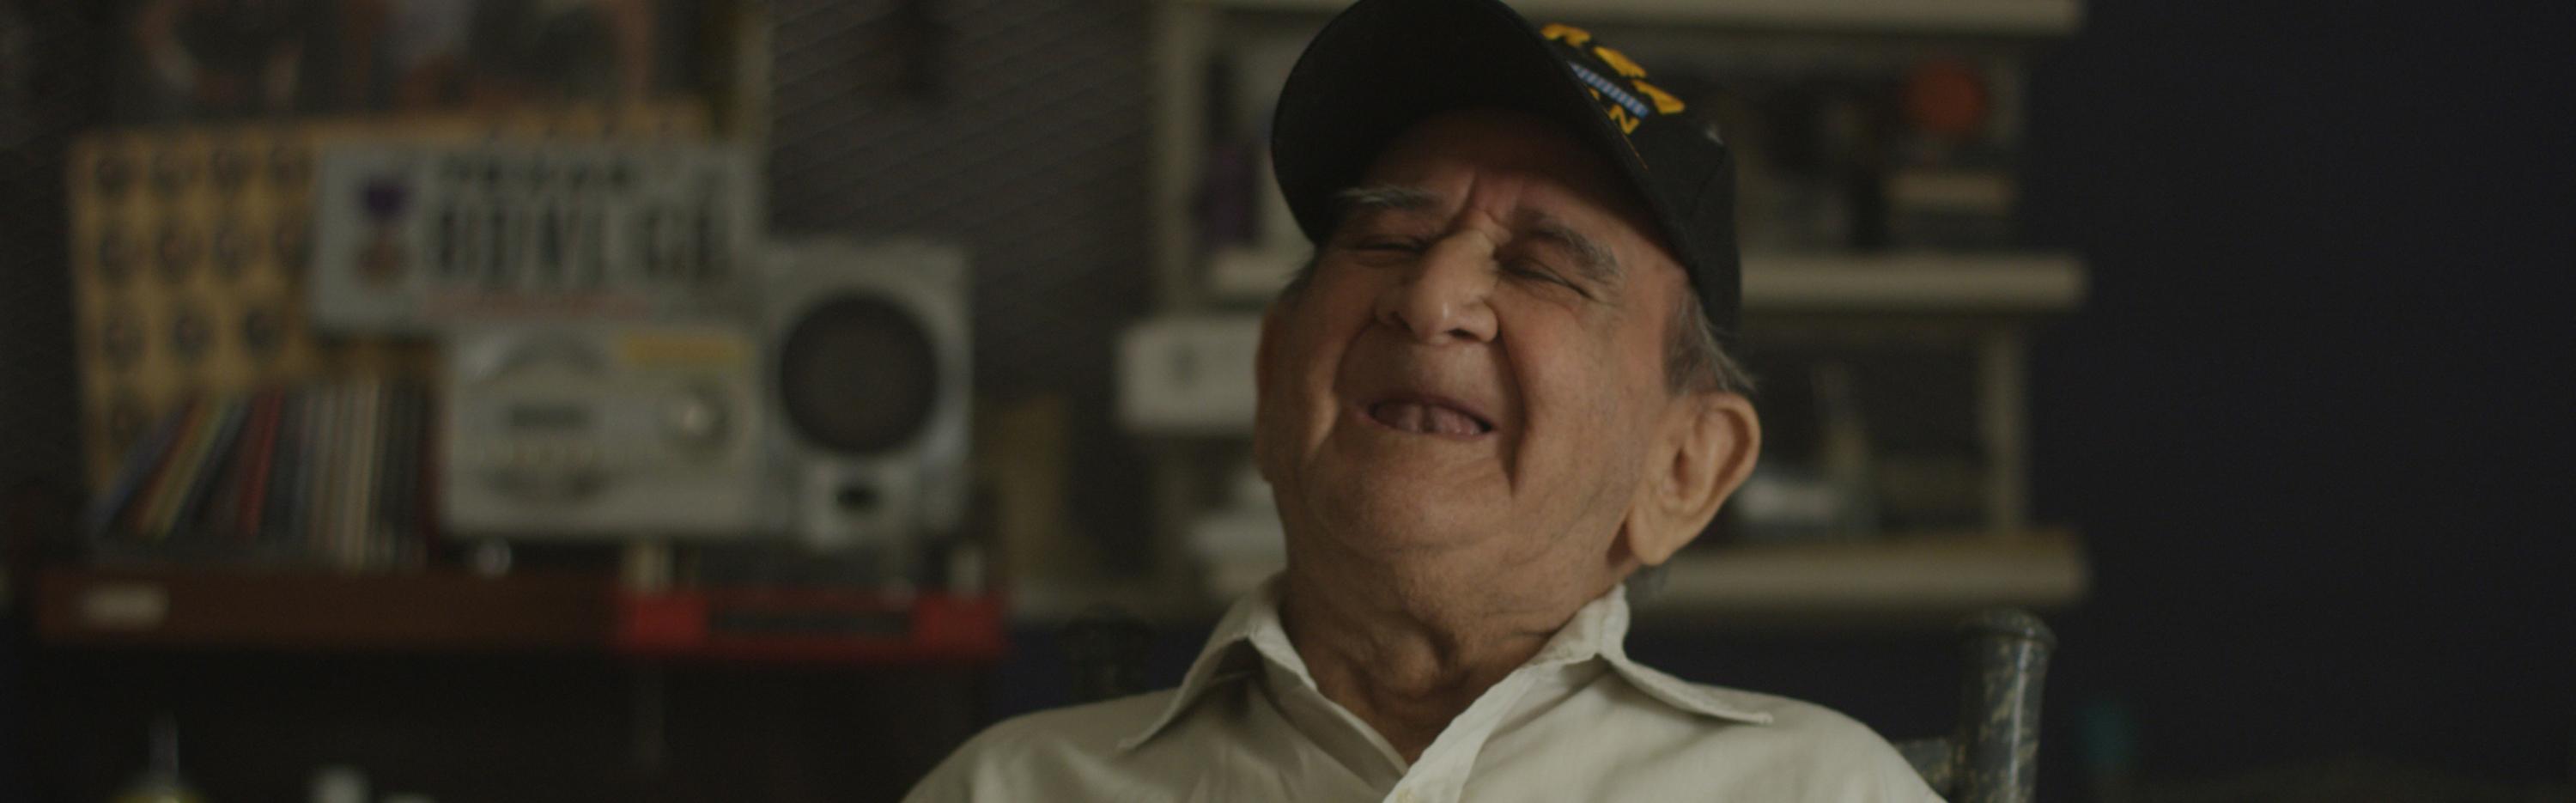 Korean War veteran laughing